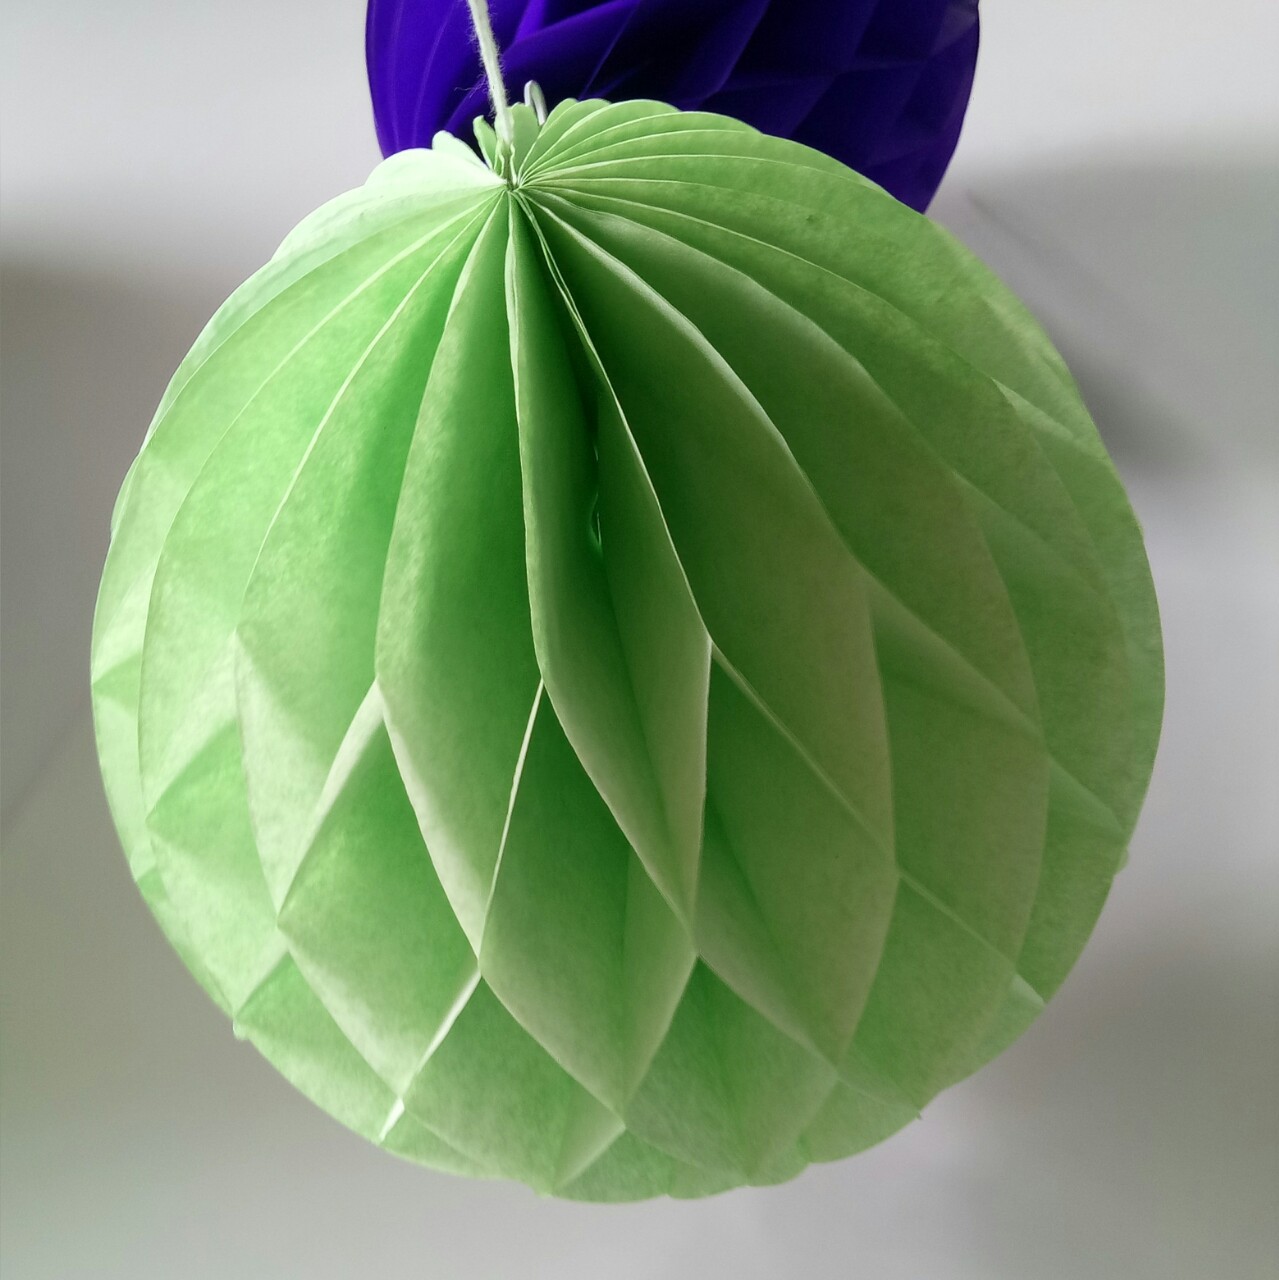 【折纸_教程】这个花球每个面自带风车_哔哩哔哩 (゜-゜)つロ 干杯~-bilibili